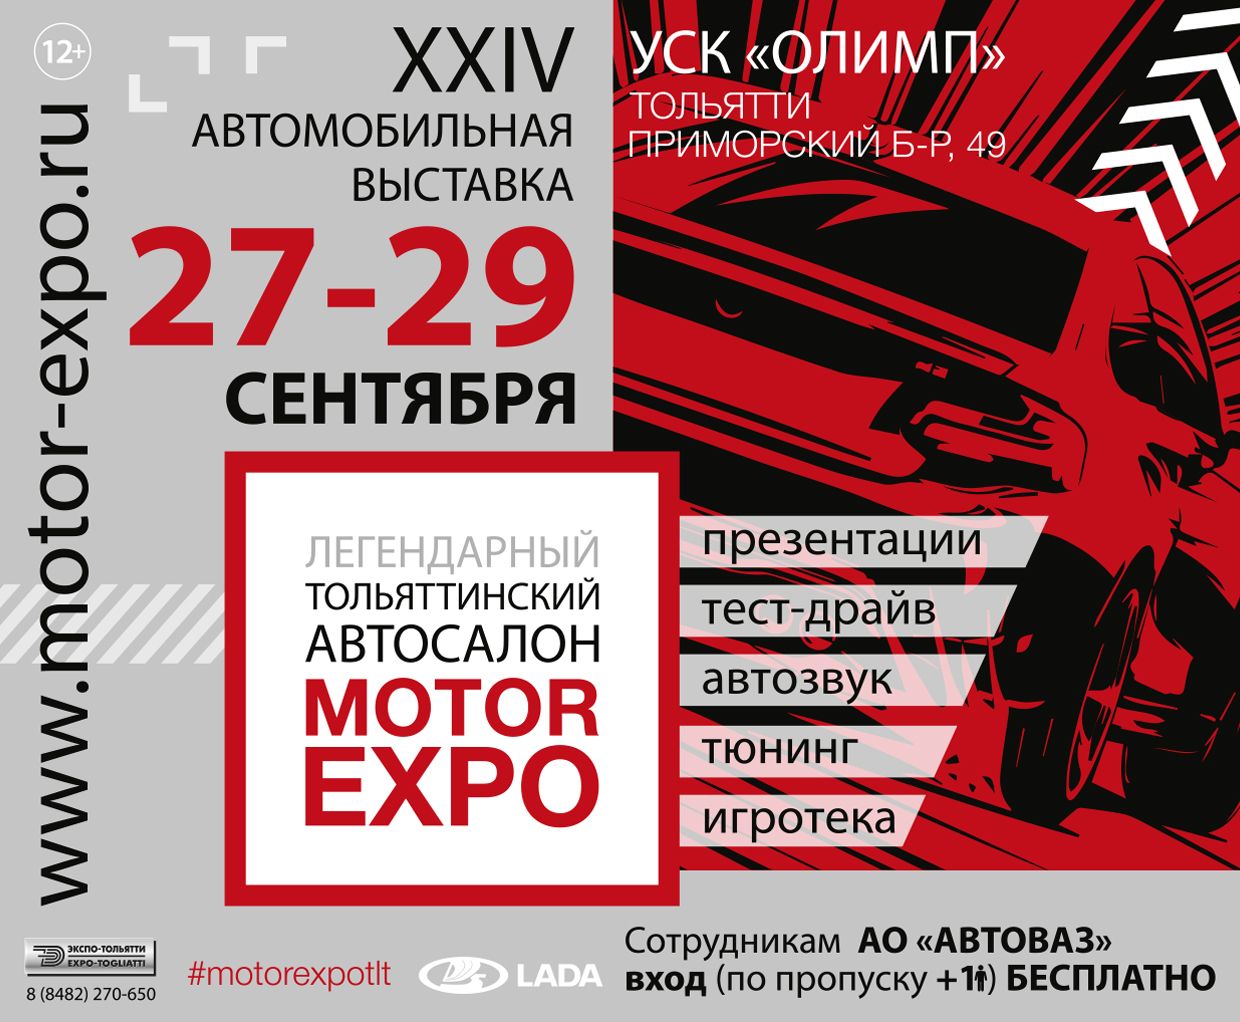 Успей купить билет на выставку в Тольятти MOTOREXPO 2019 по суперцене!